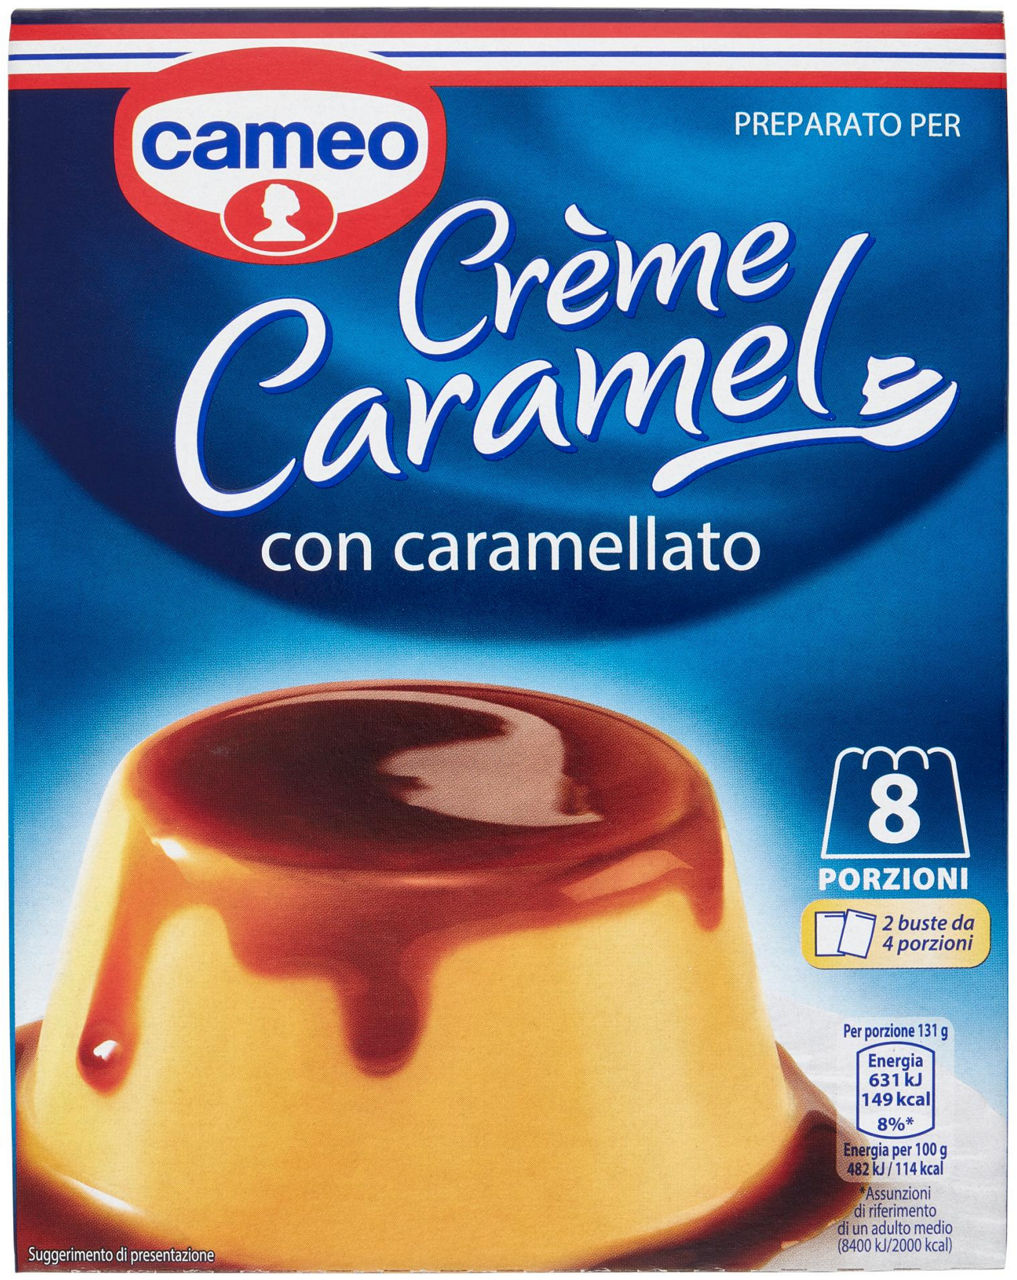 Creme caramel cameo 2 buste c/caramello sc. gr.200